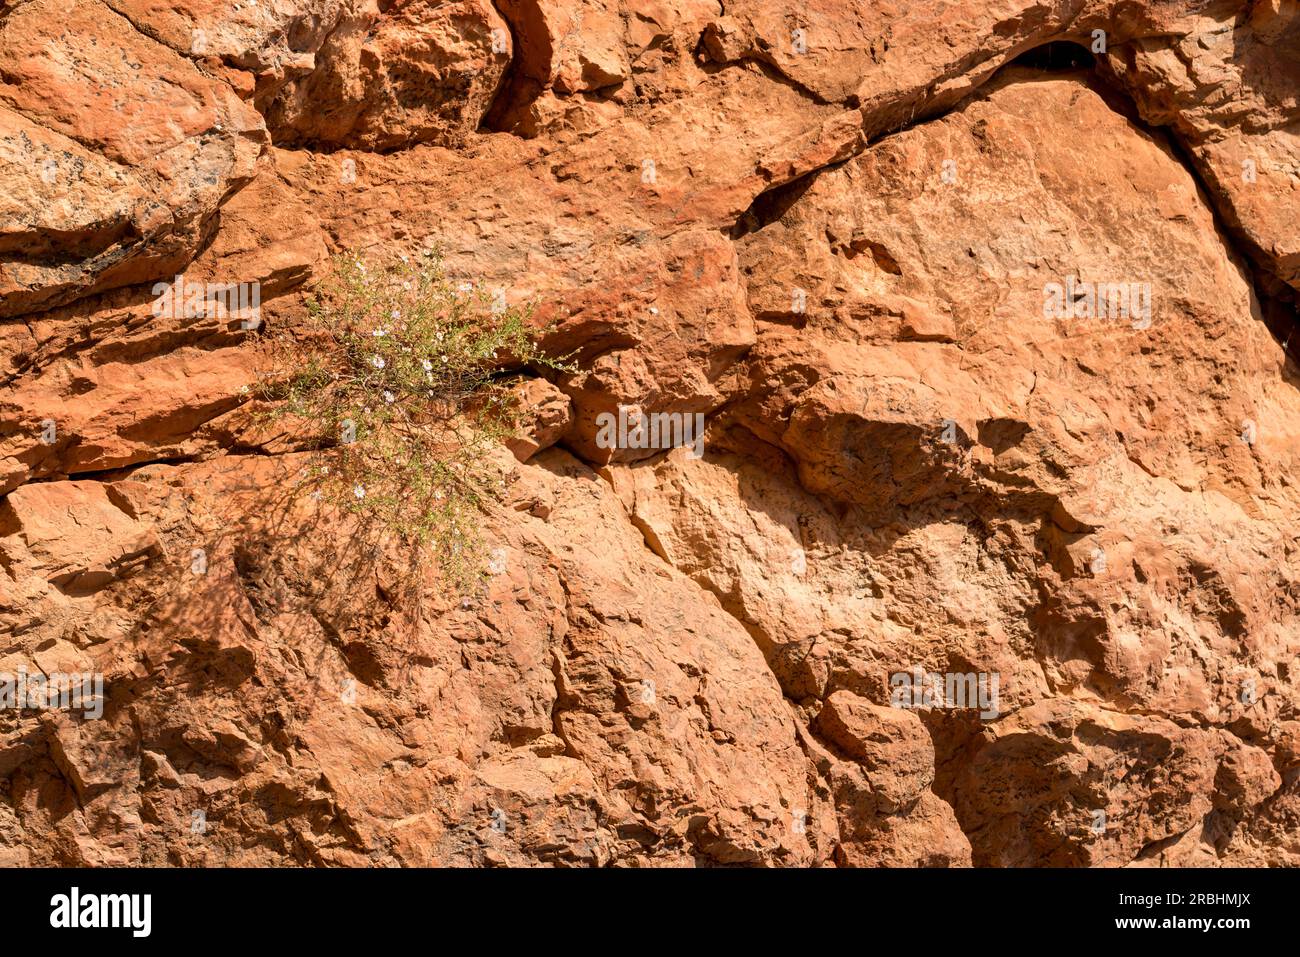 Une petite plante de terre aride survivante sur un rebord dans les murs siltstone d'Emily Gap (Yeperenye) près d'Alice Springs (Mparlwe) en Australie centrale Banque D'Images